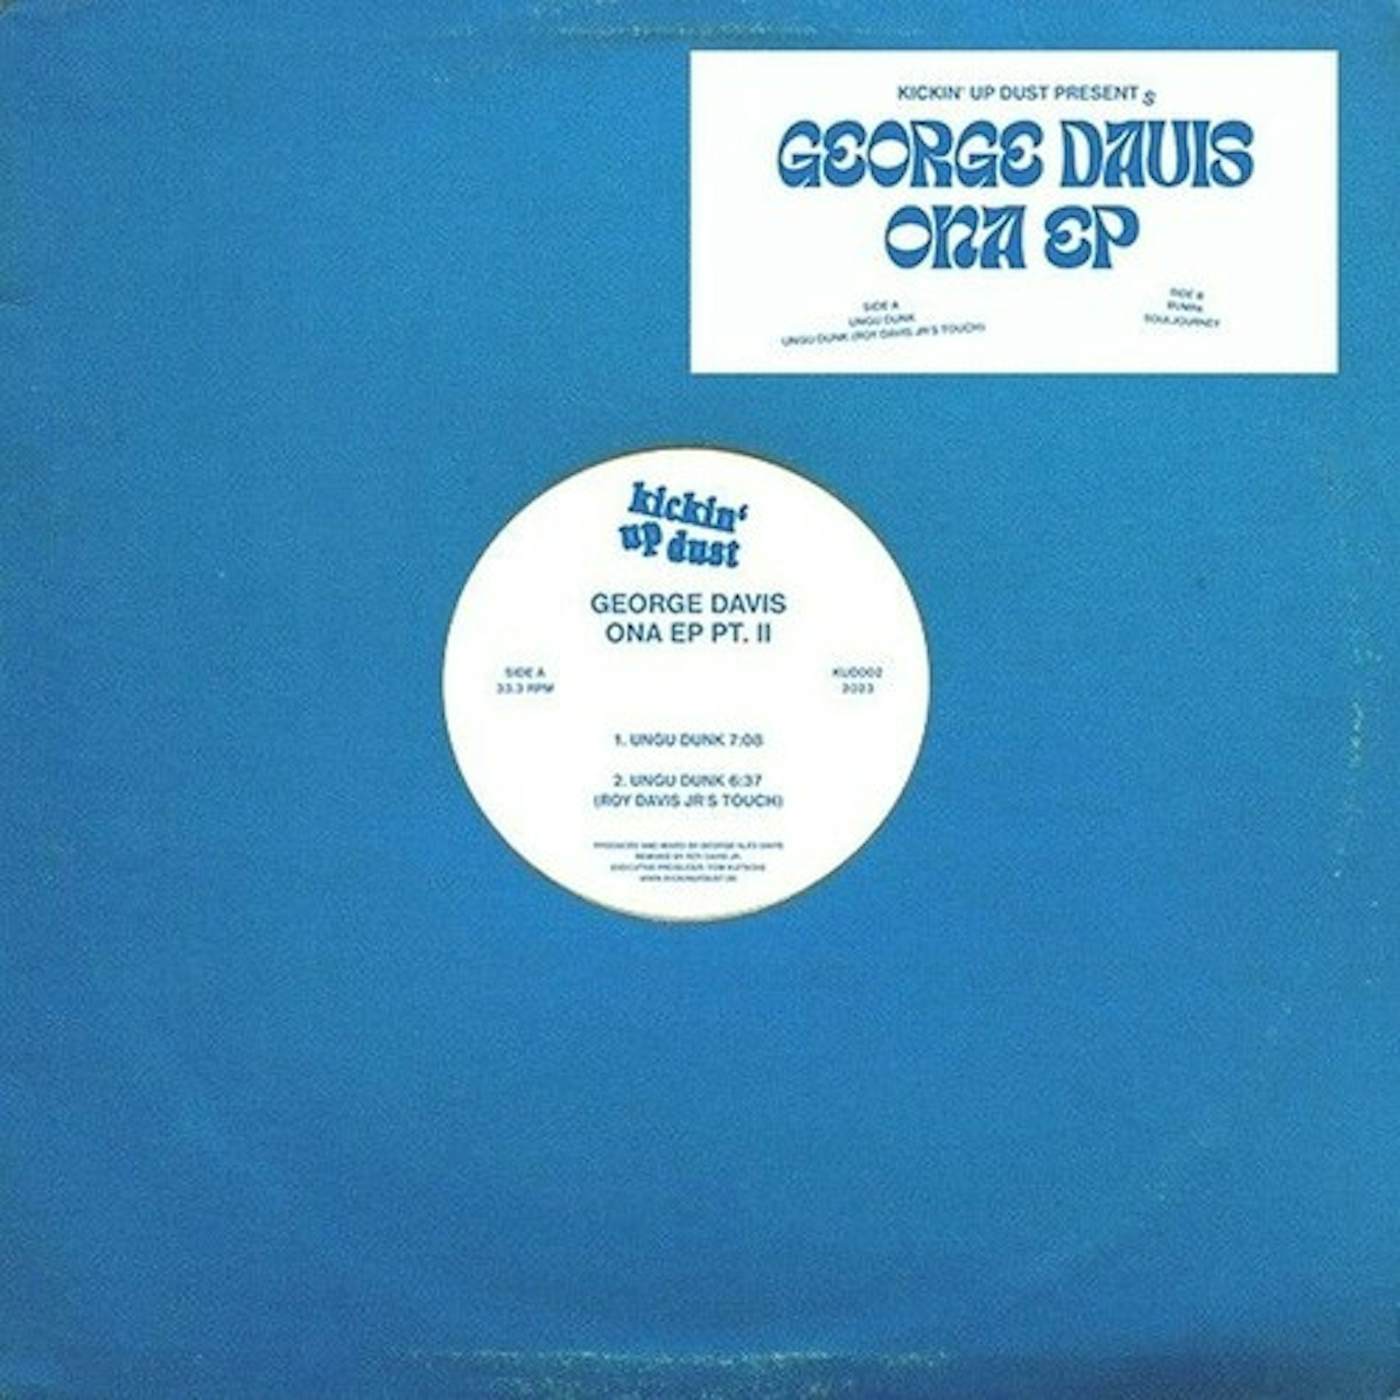 George Davis ONA EP (PART II) Vinyl Record